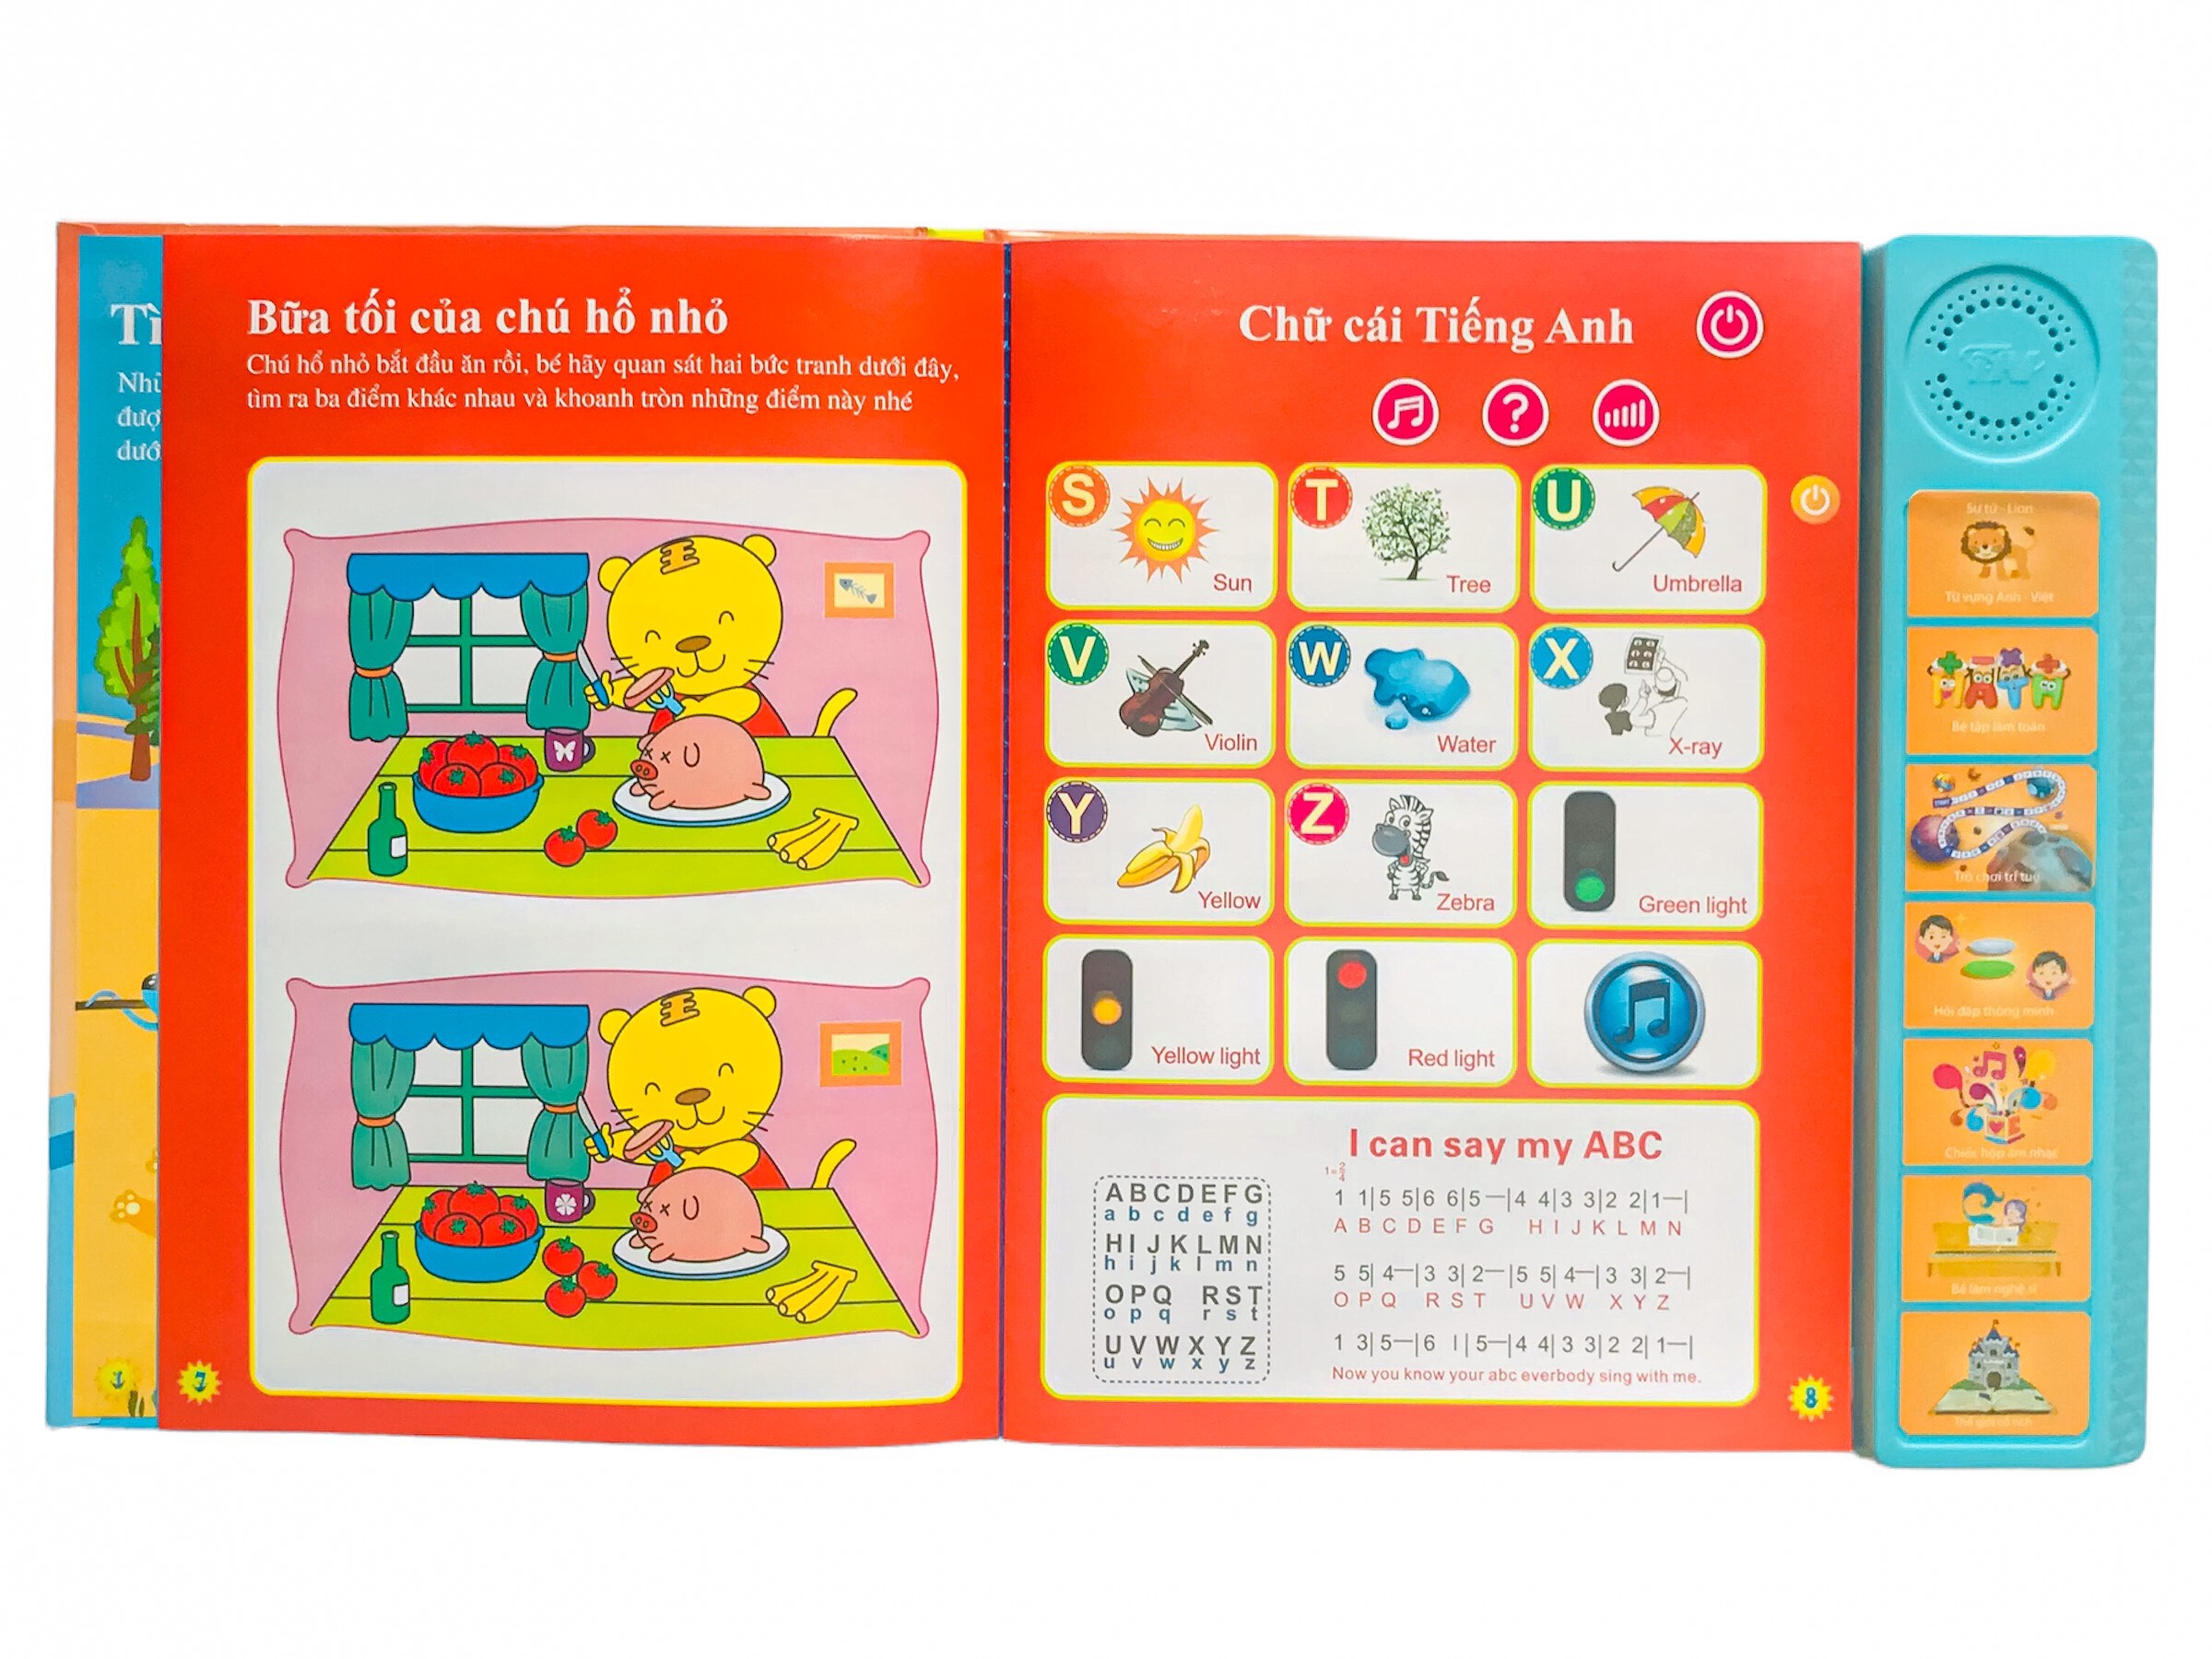 Sách nói song ngữ Anh – Việt – Phiên bản đặc biệt Thanh Nga cho bé từ 3 tuổi trở lên